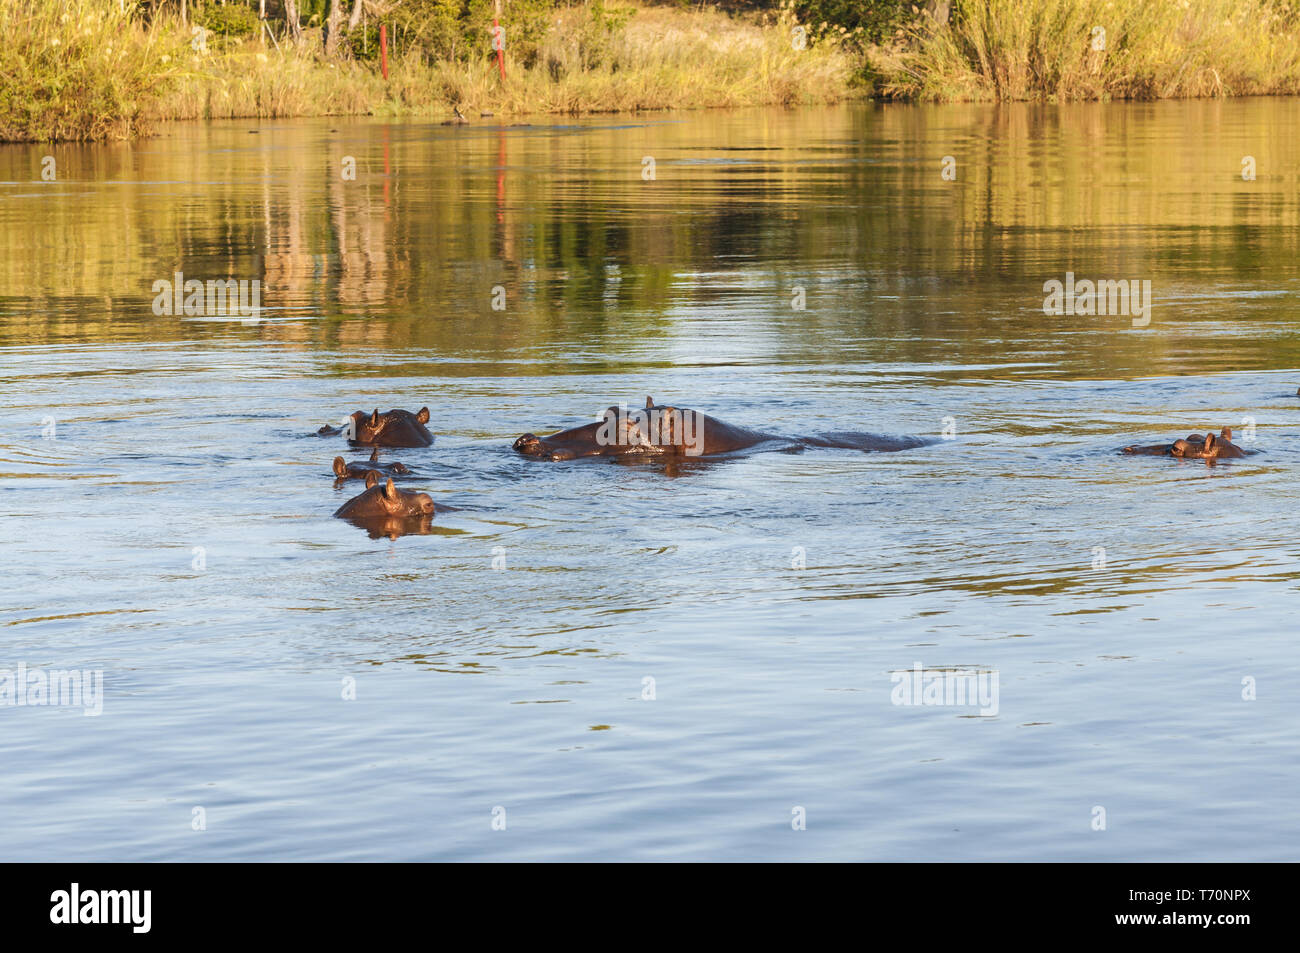 Hippopotames dans la rivière Okavango, Namibie Afrique Australe. Banque D'Images